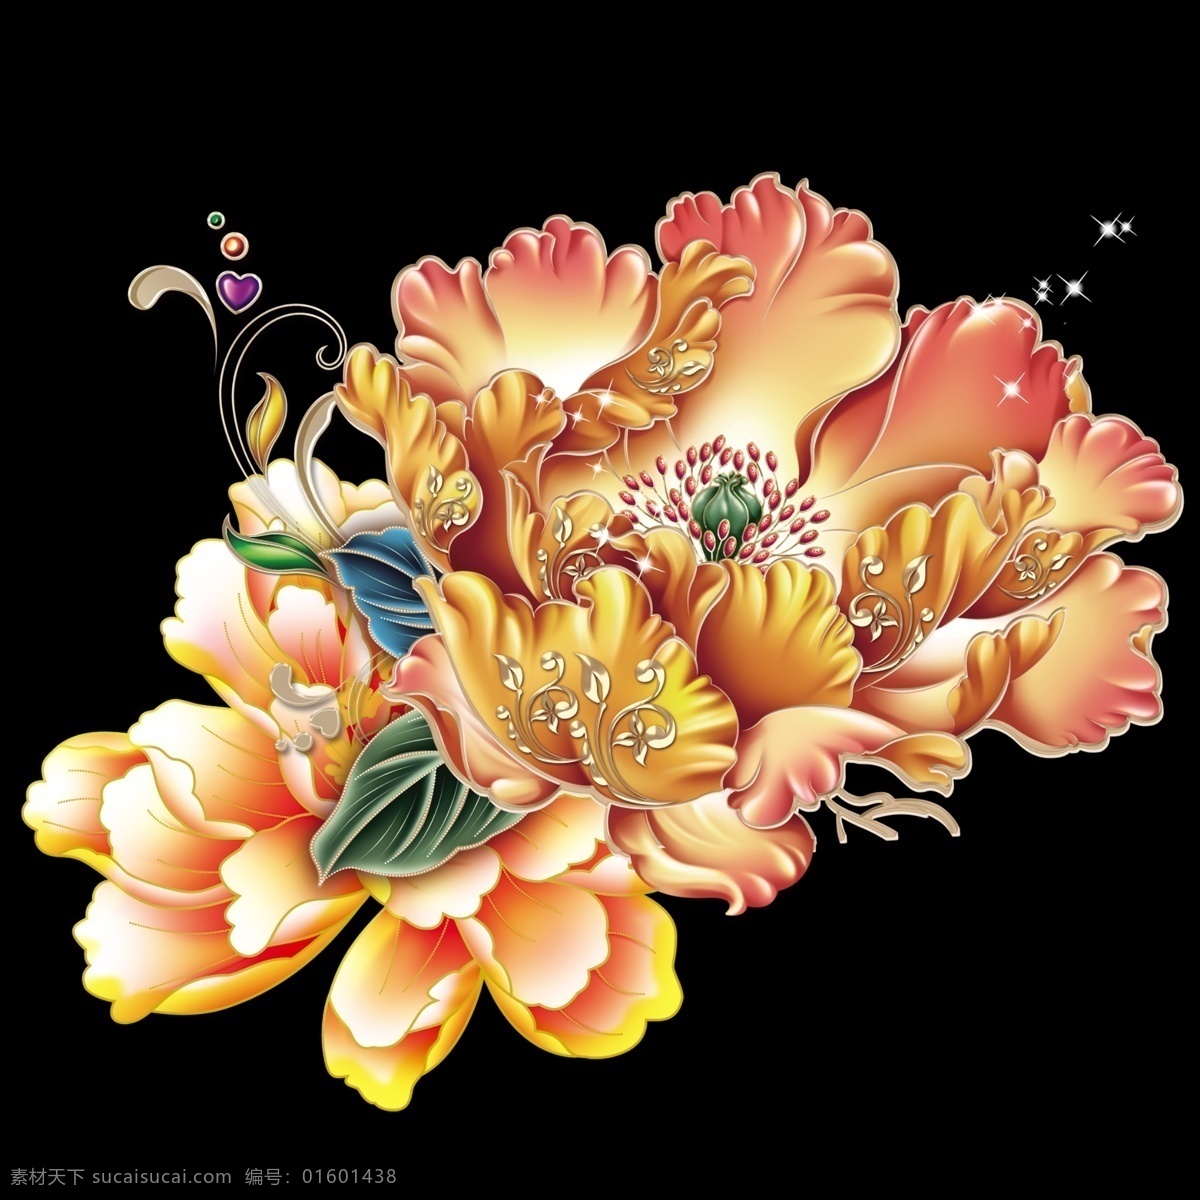 牡丹花 牡丹 透明背景 金边牡丹 牡丹素材 花朵 分层